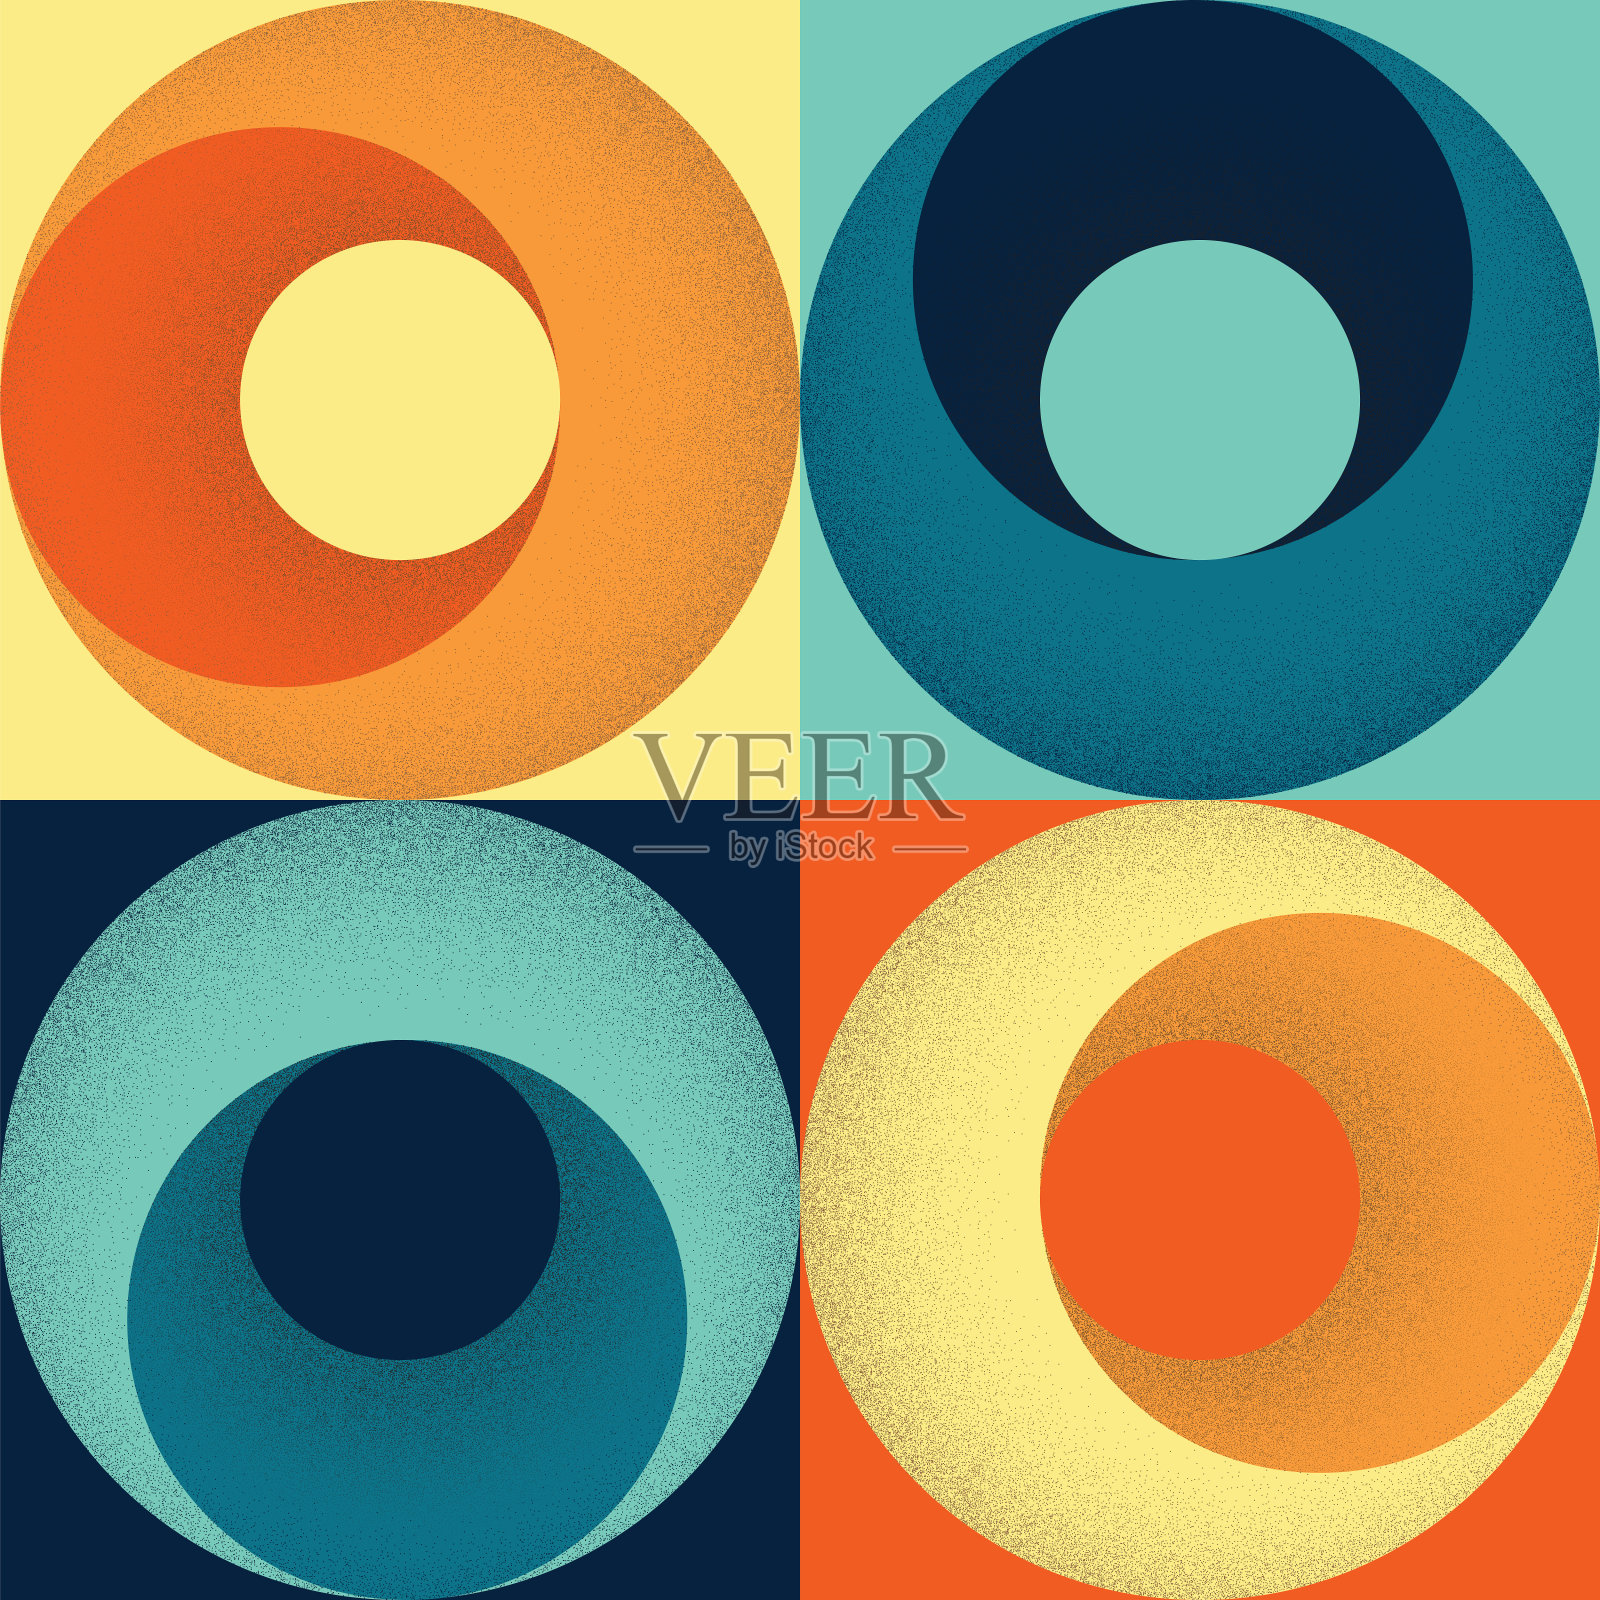 复古配色方案无缝的60年代或70年代风格的正方形和圆形几何图案与点状阴影插画图片素材